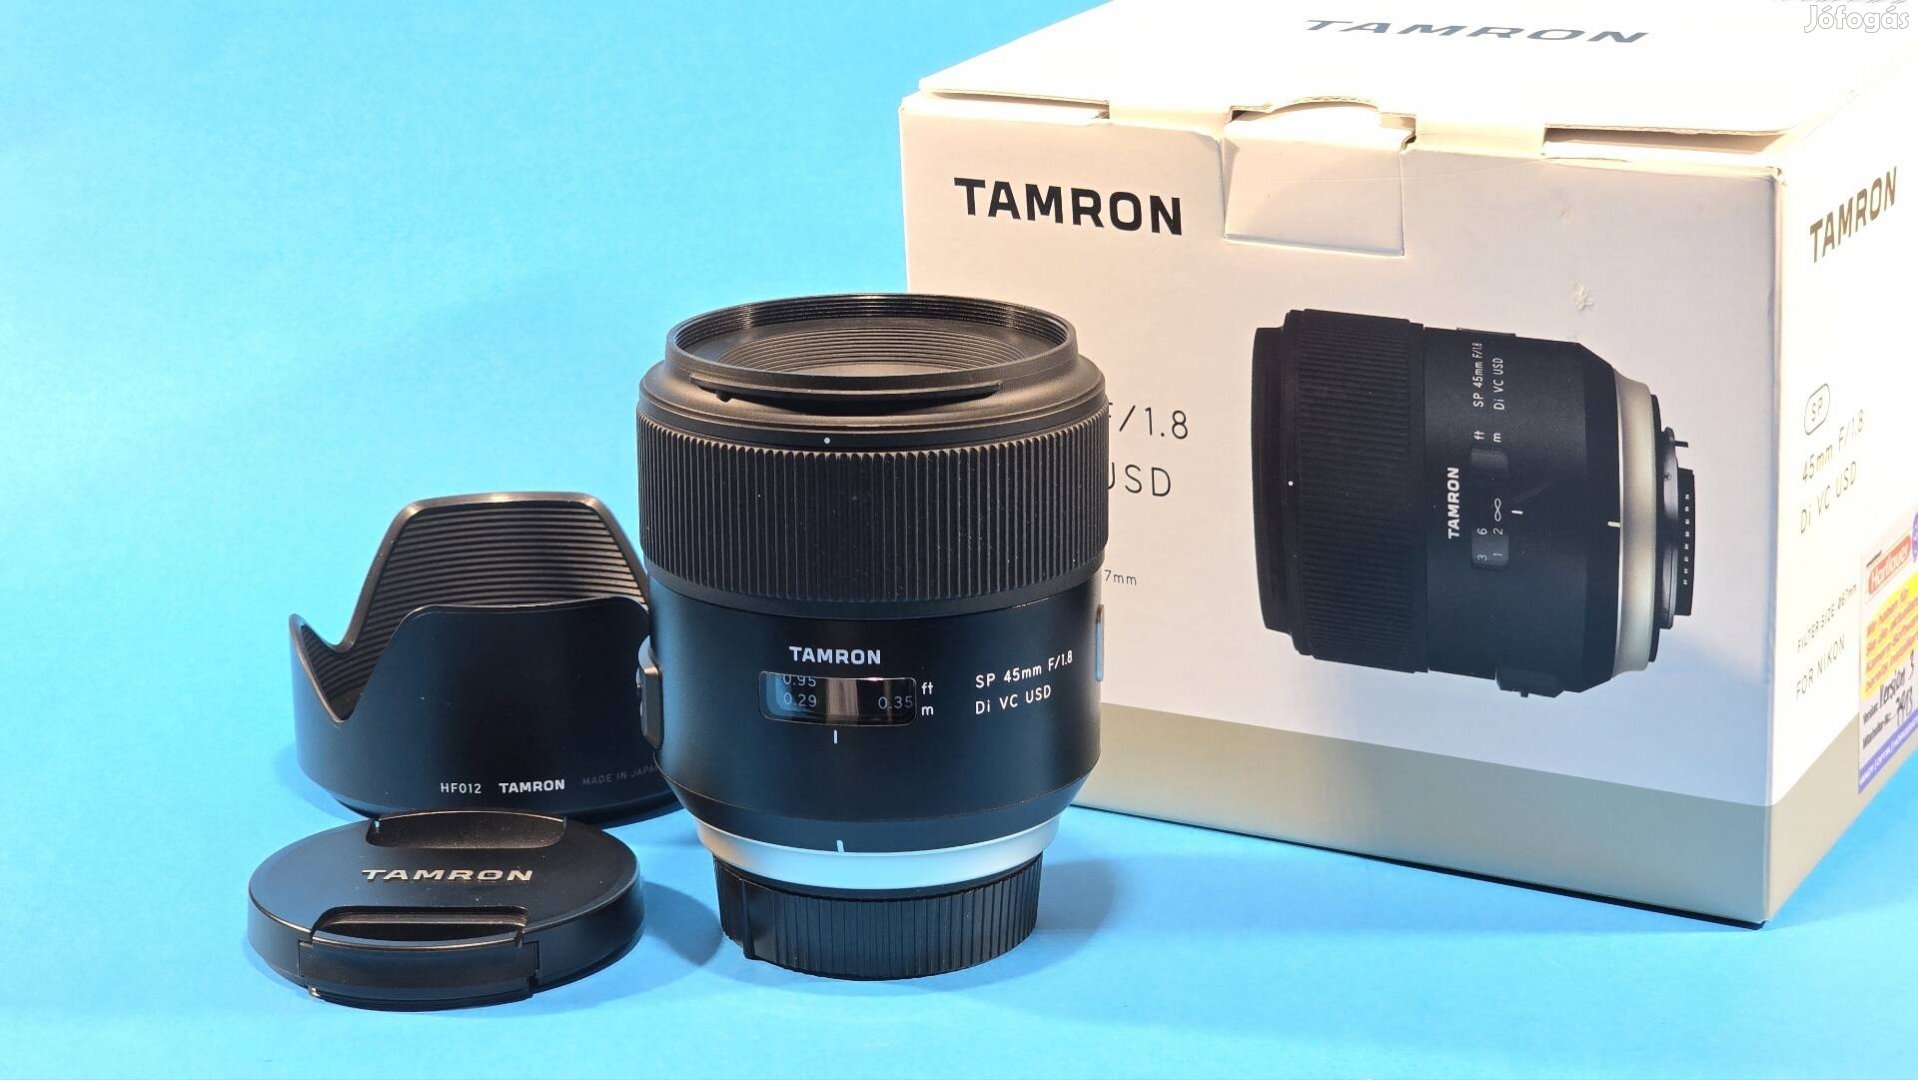 Tamron sp 1.8/45mm di VC usd objektív nikon 45mm friss Firmware 